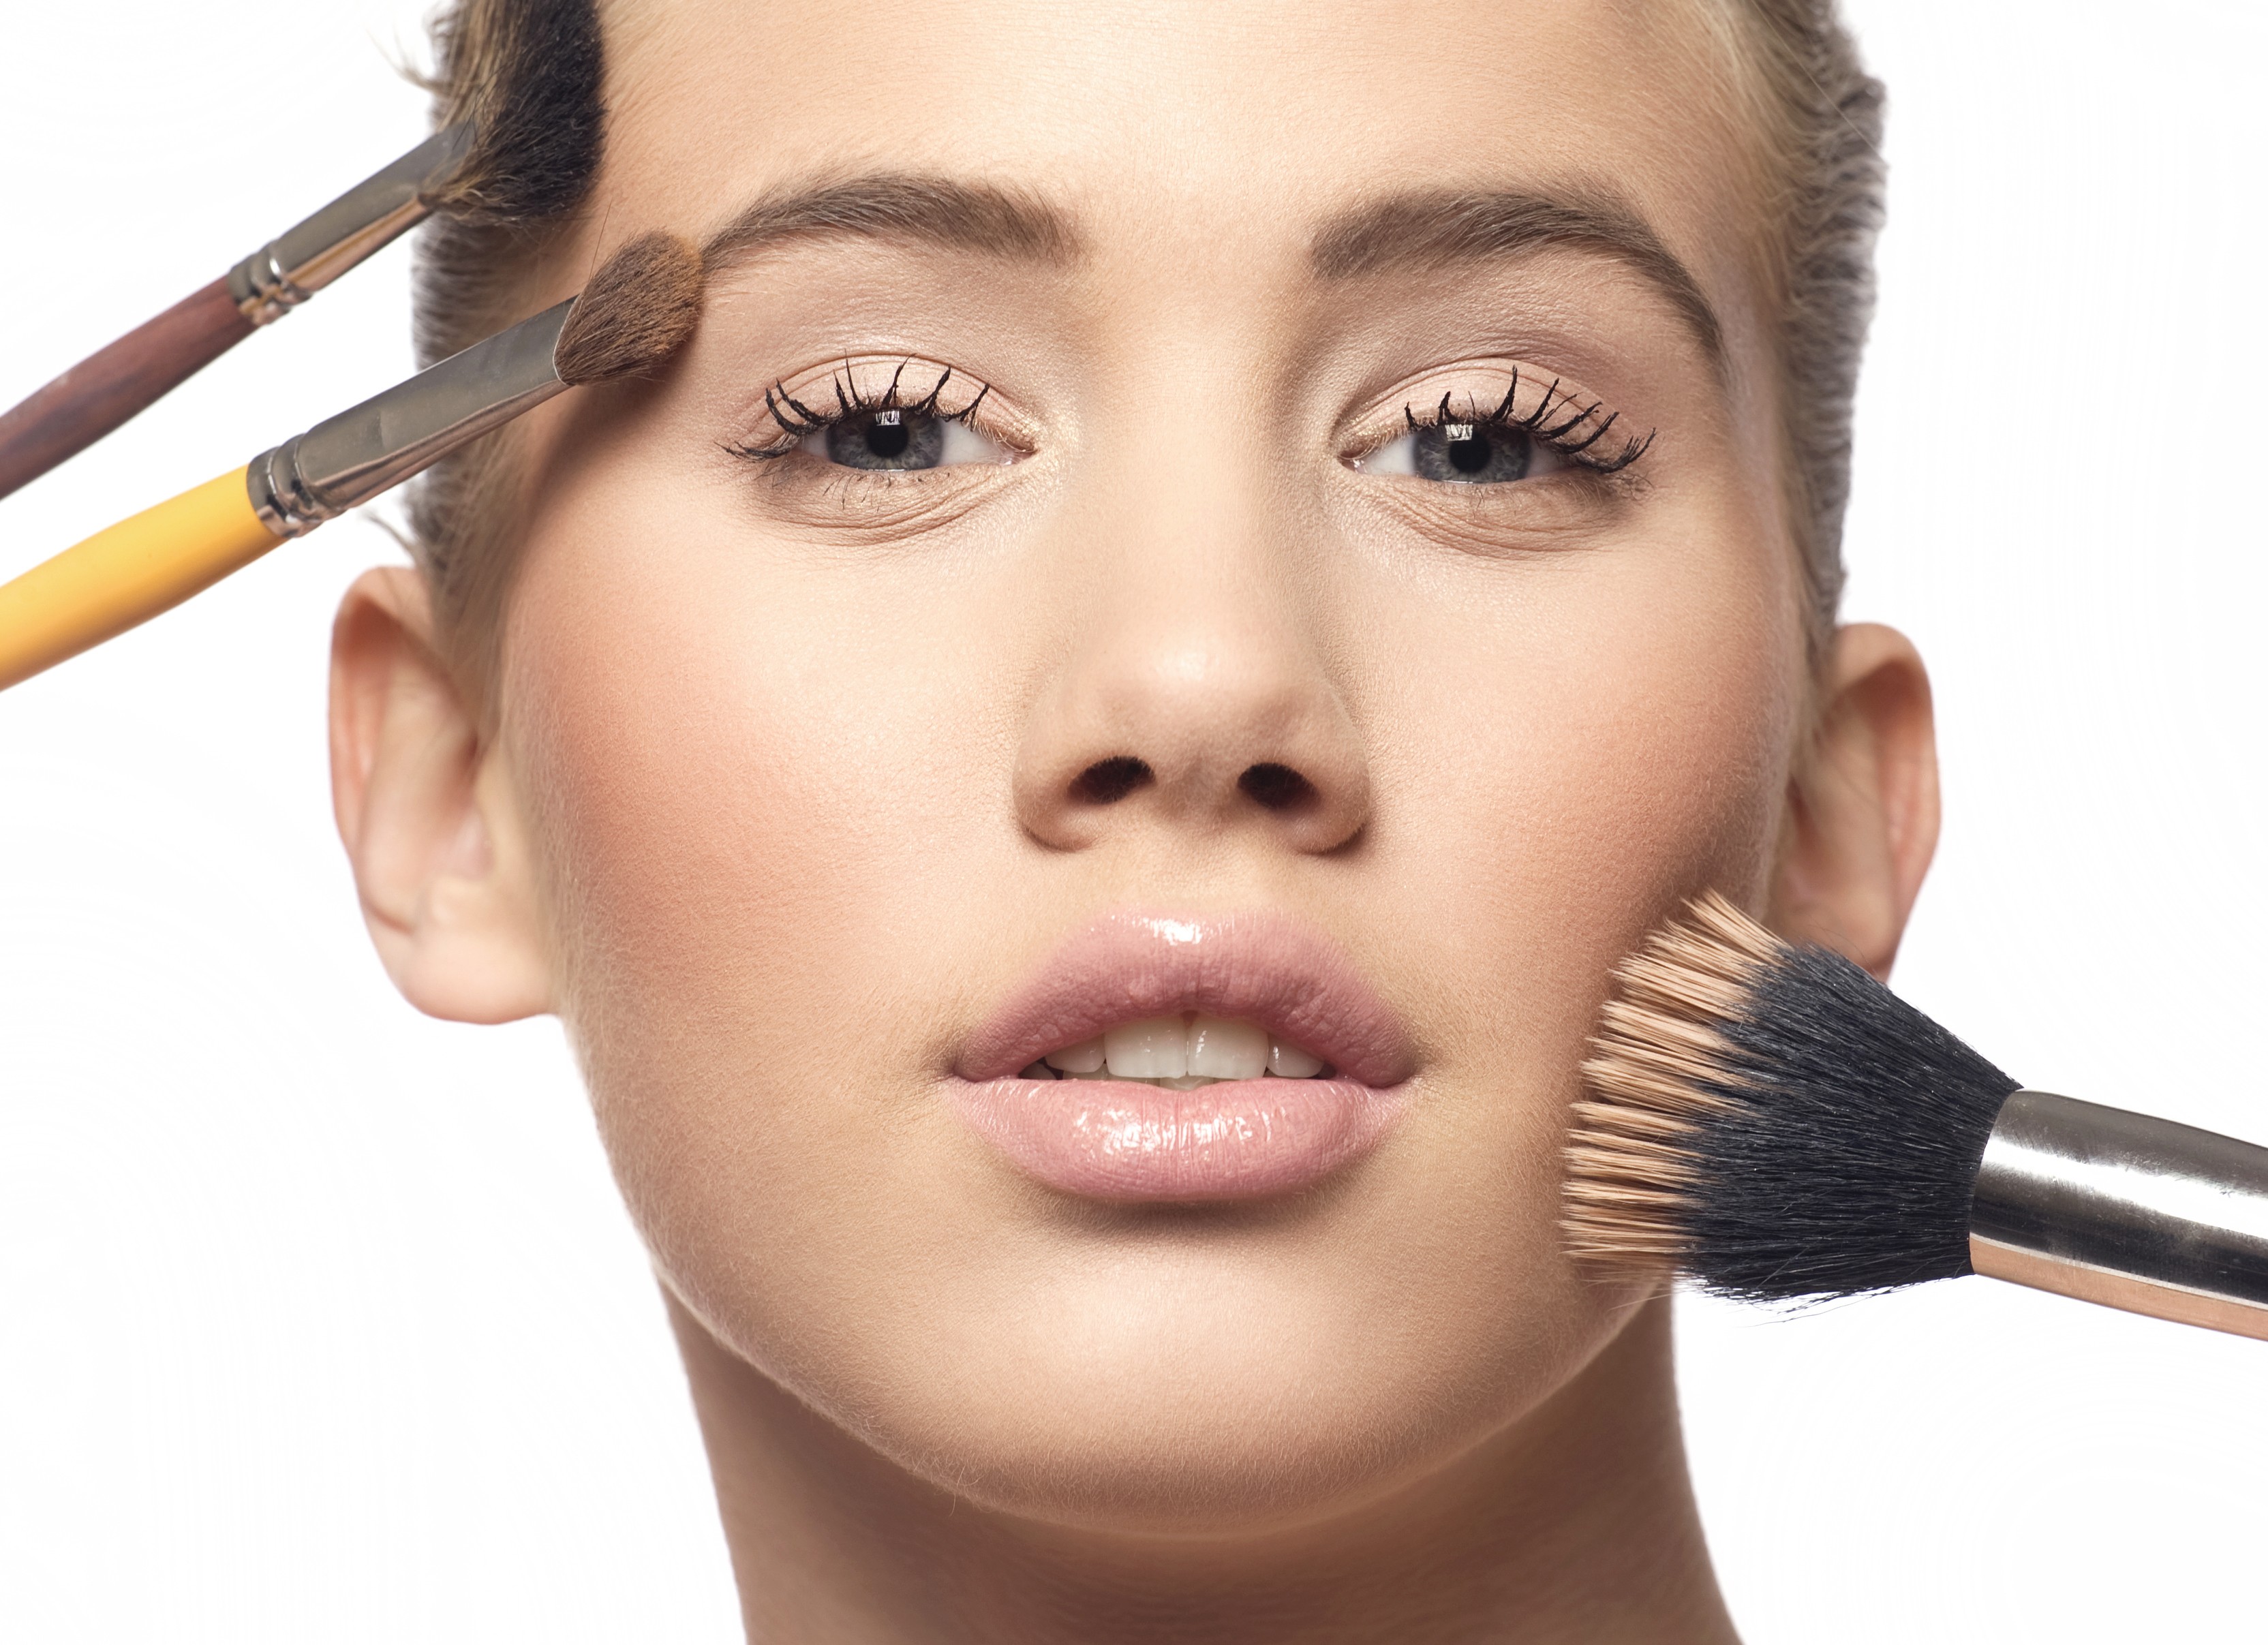 Reunimos as dicas essenciais sobre maquiagem para você ficar linda (Foto: Think Stock)